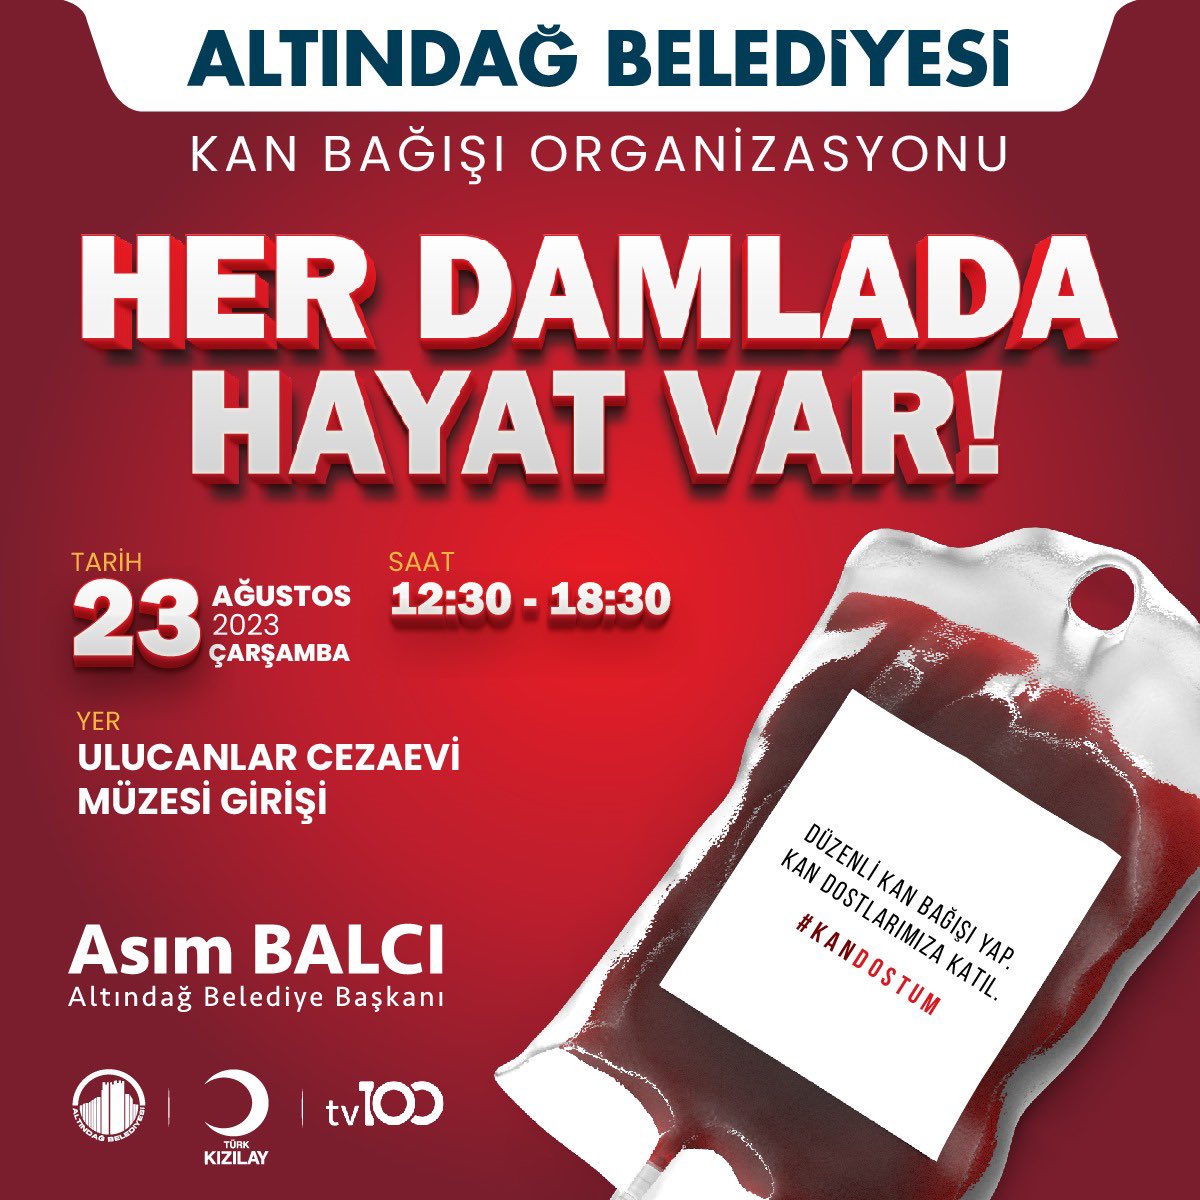 #SensizOlmaz Altındağ Belediyemiz, @Kizilay ve @tv100 ile birlikte yürüttüğümüz kan bağışı organizasyonunda siz değerli Altındağlıları da kan bağışı yapmaya davet ediyoruz. 📍Ulucanlar Cezaevi Müzesi Girişi 🗓️23 Ağustos Çarşamba 🕒12.30 - 18.30 saatleri arası